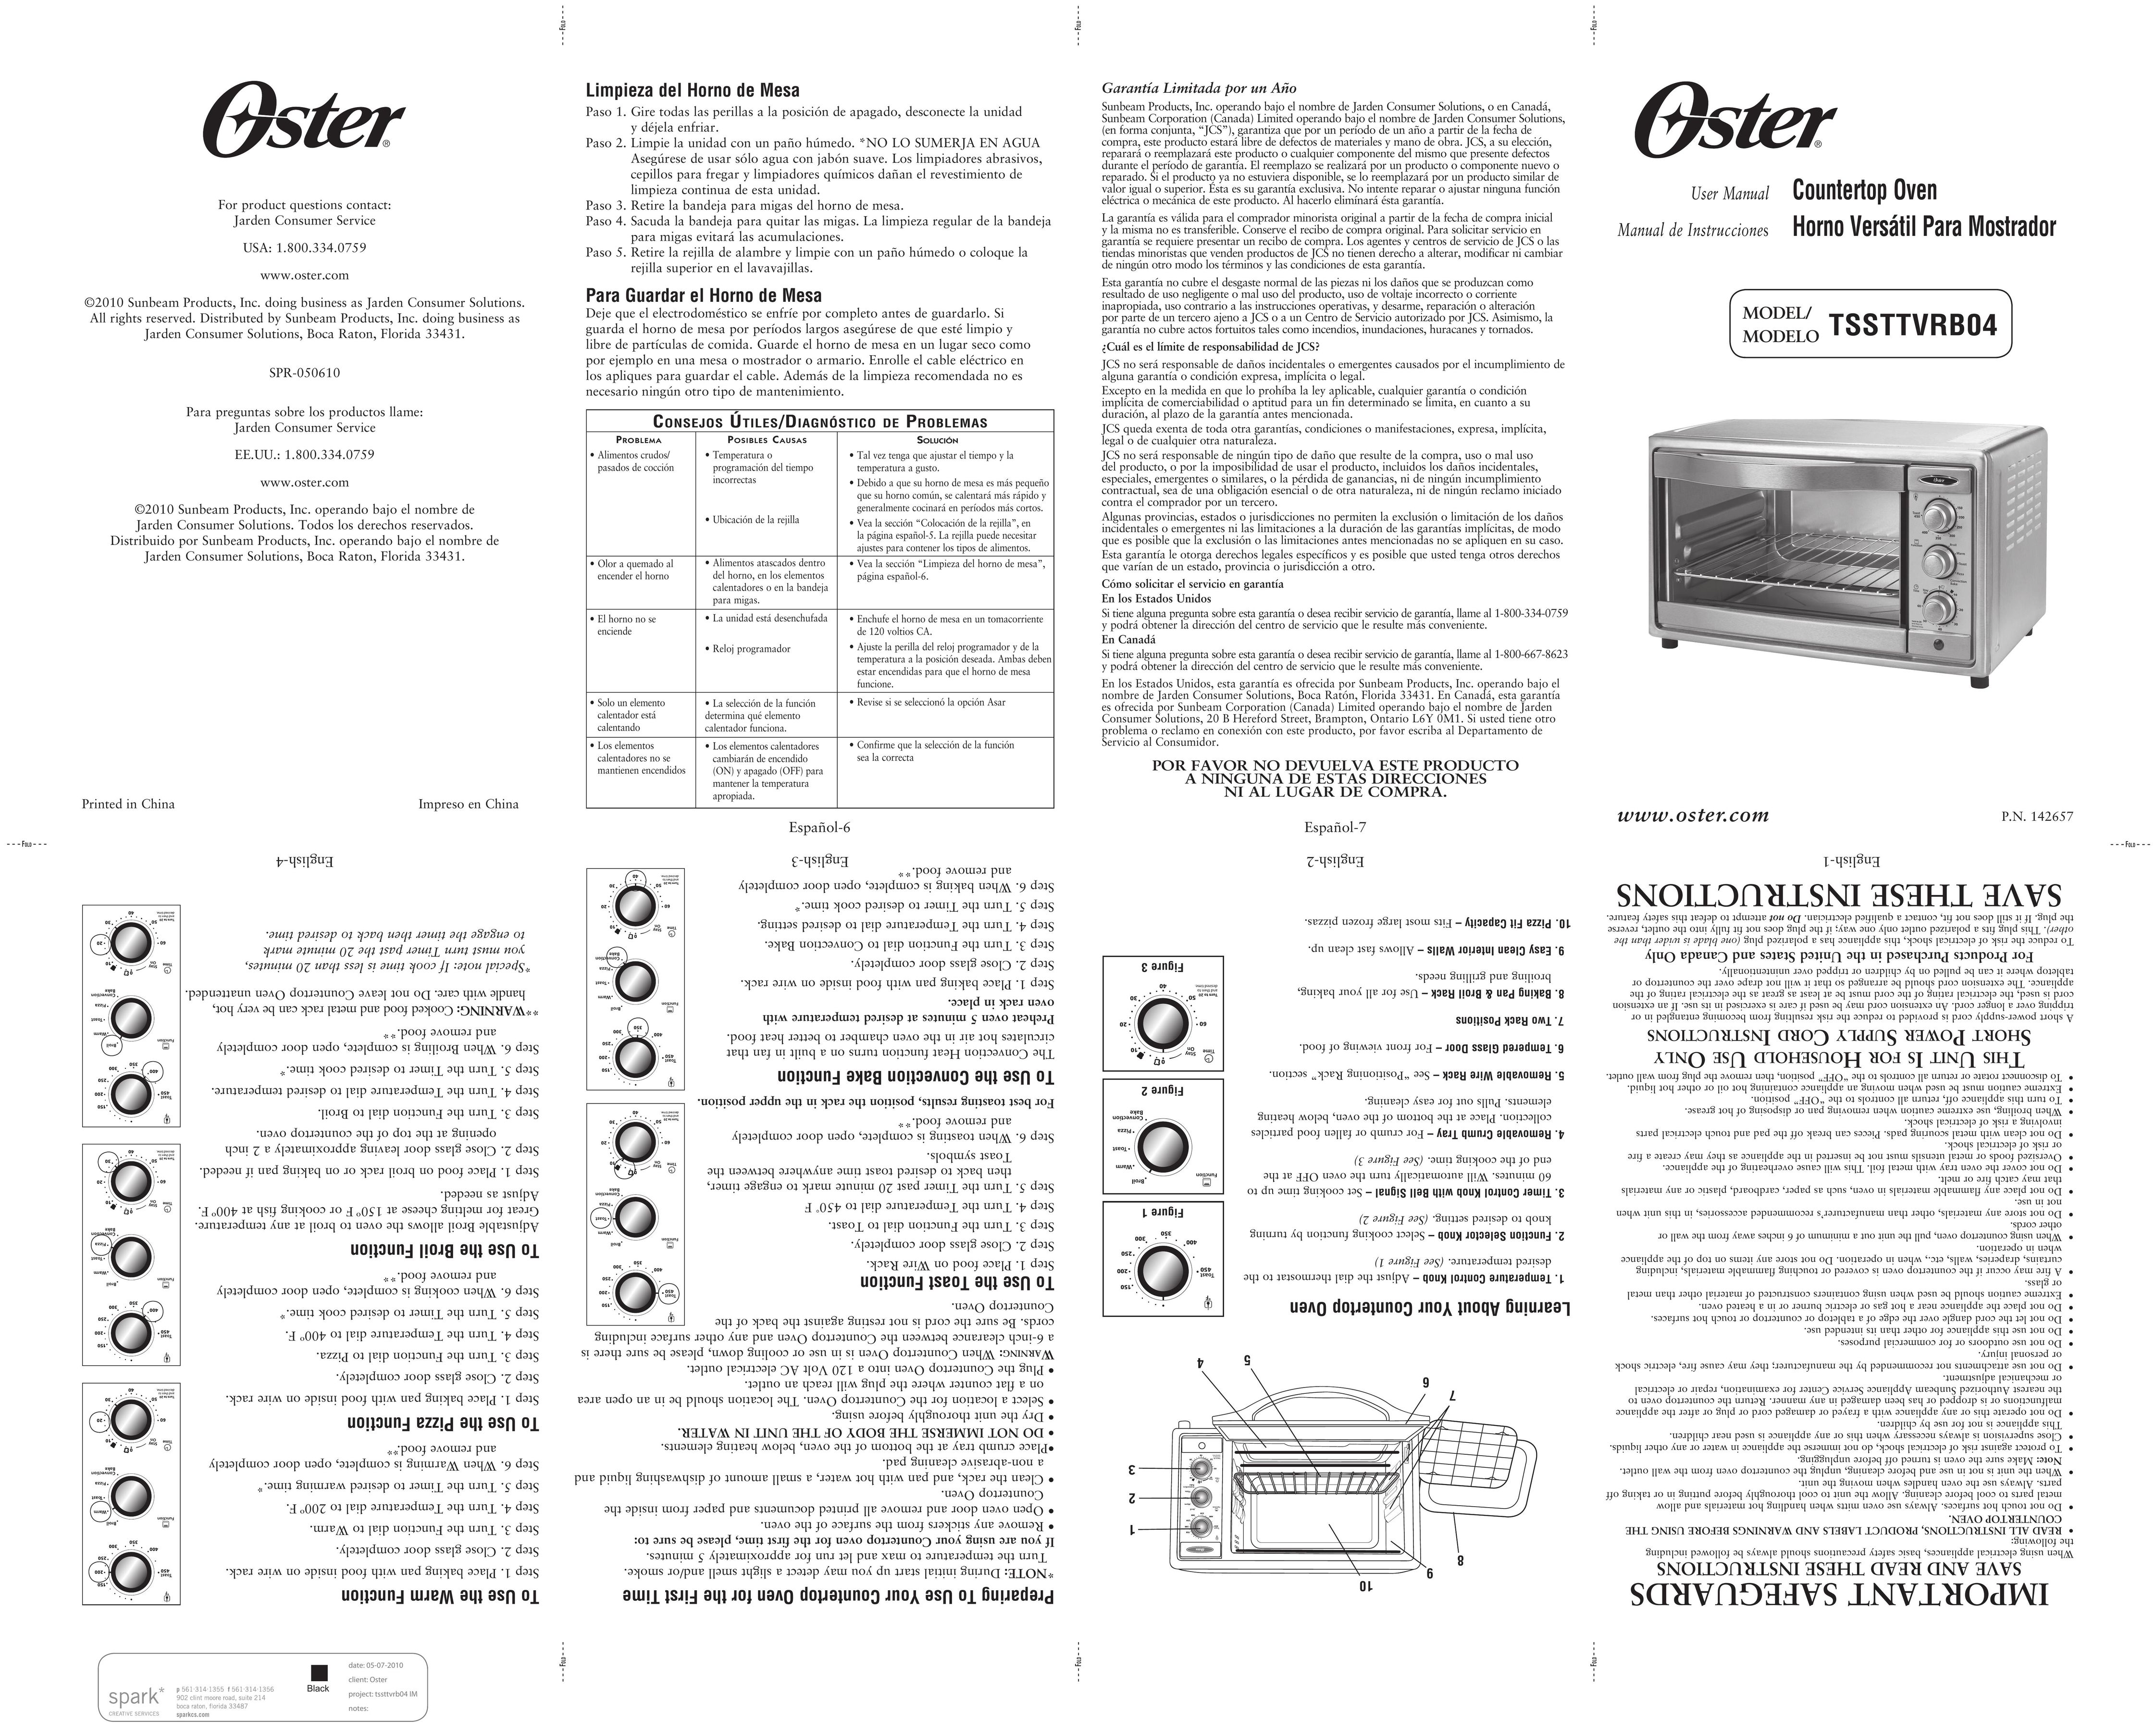 Oster TSSTTVRBO4 Oven User Manual